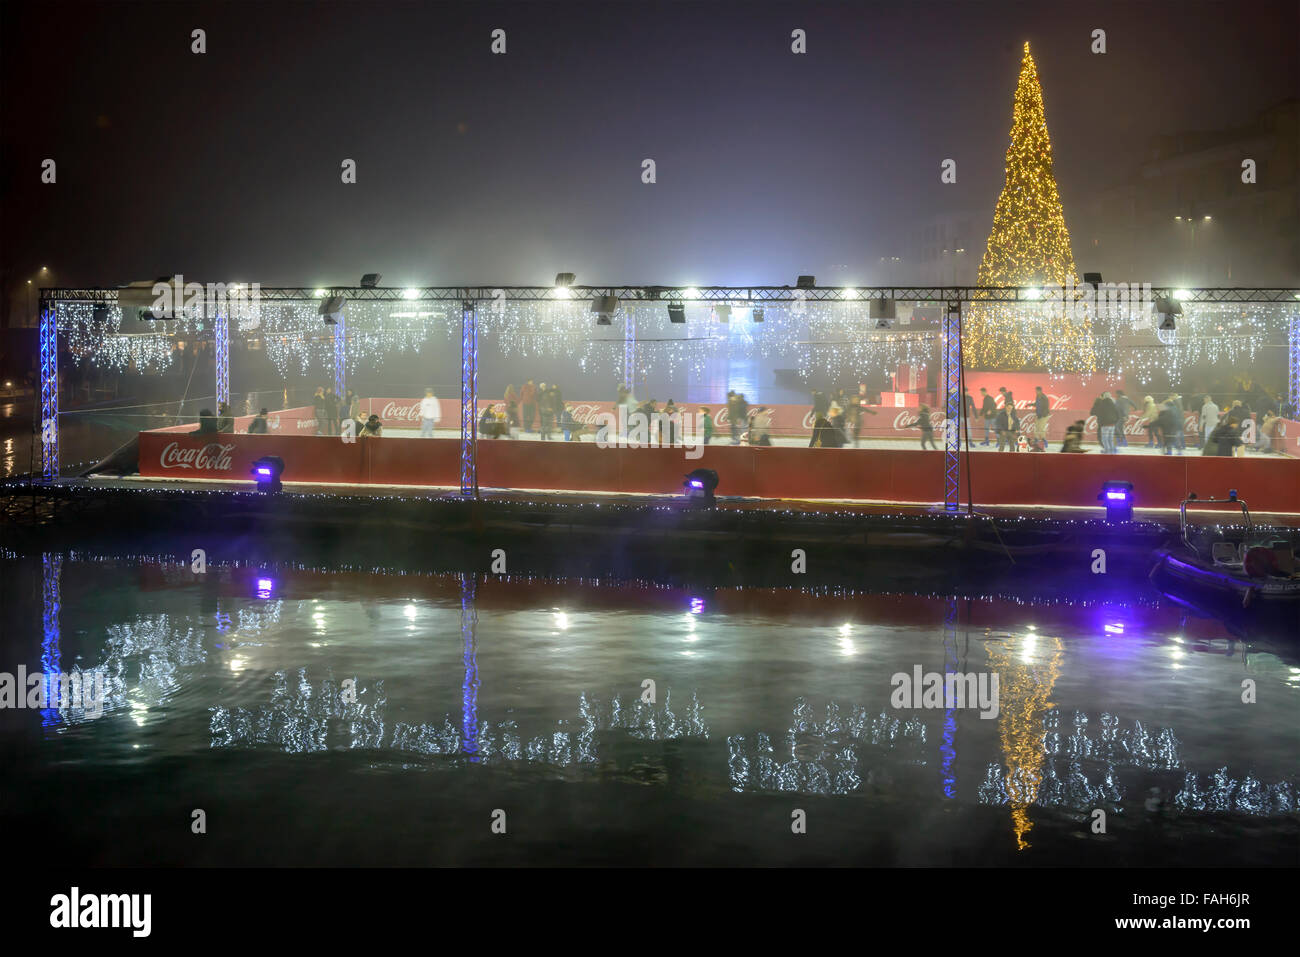 Mailand, Italien - 8. Dezember: Nacht wiederhergestellt Leben im Zentrum der Stadt an Weihnachtszeit, eine schwimmende Eisbahn und Weihnachtsbaum am Ufer an Stockfoto